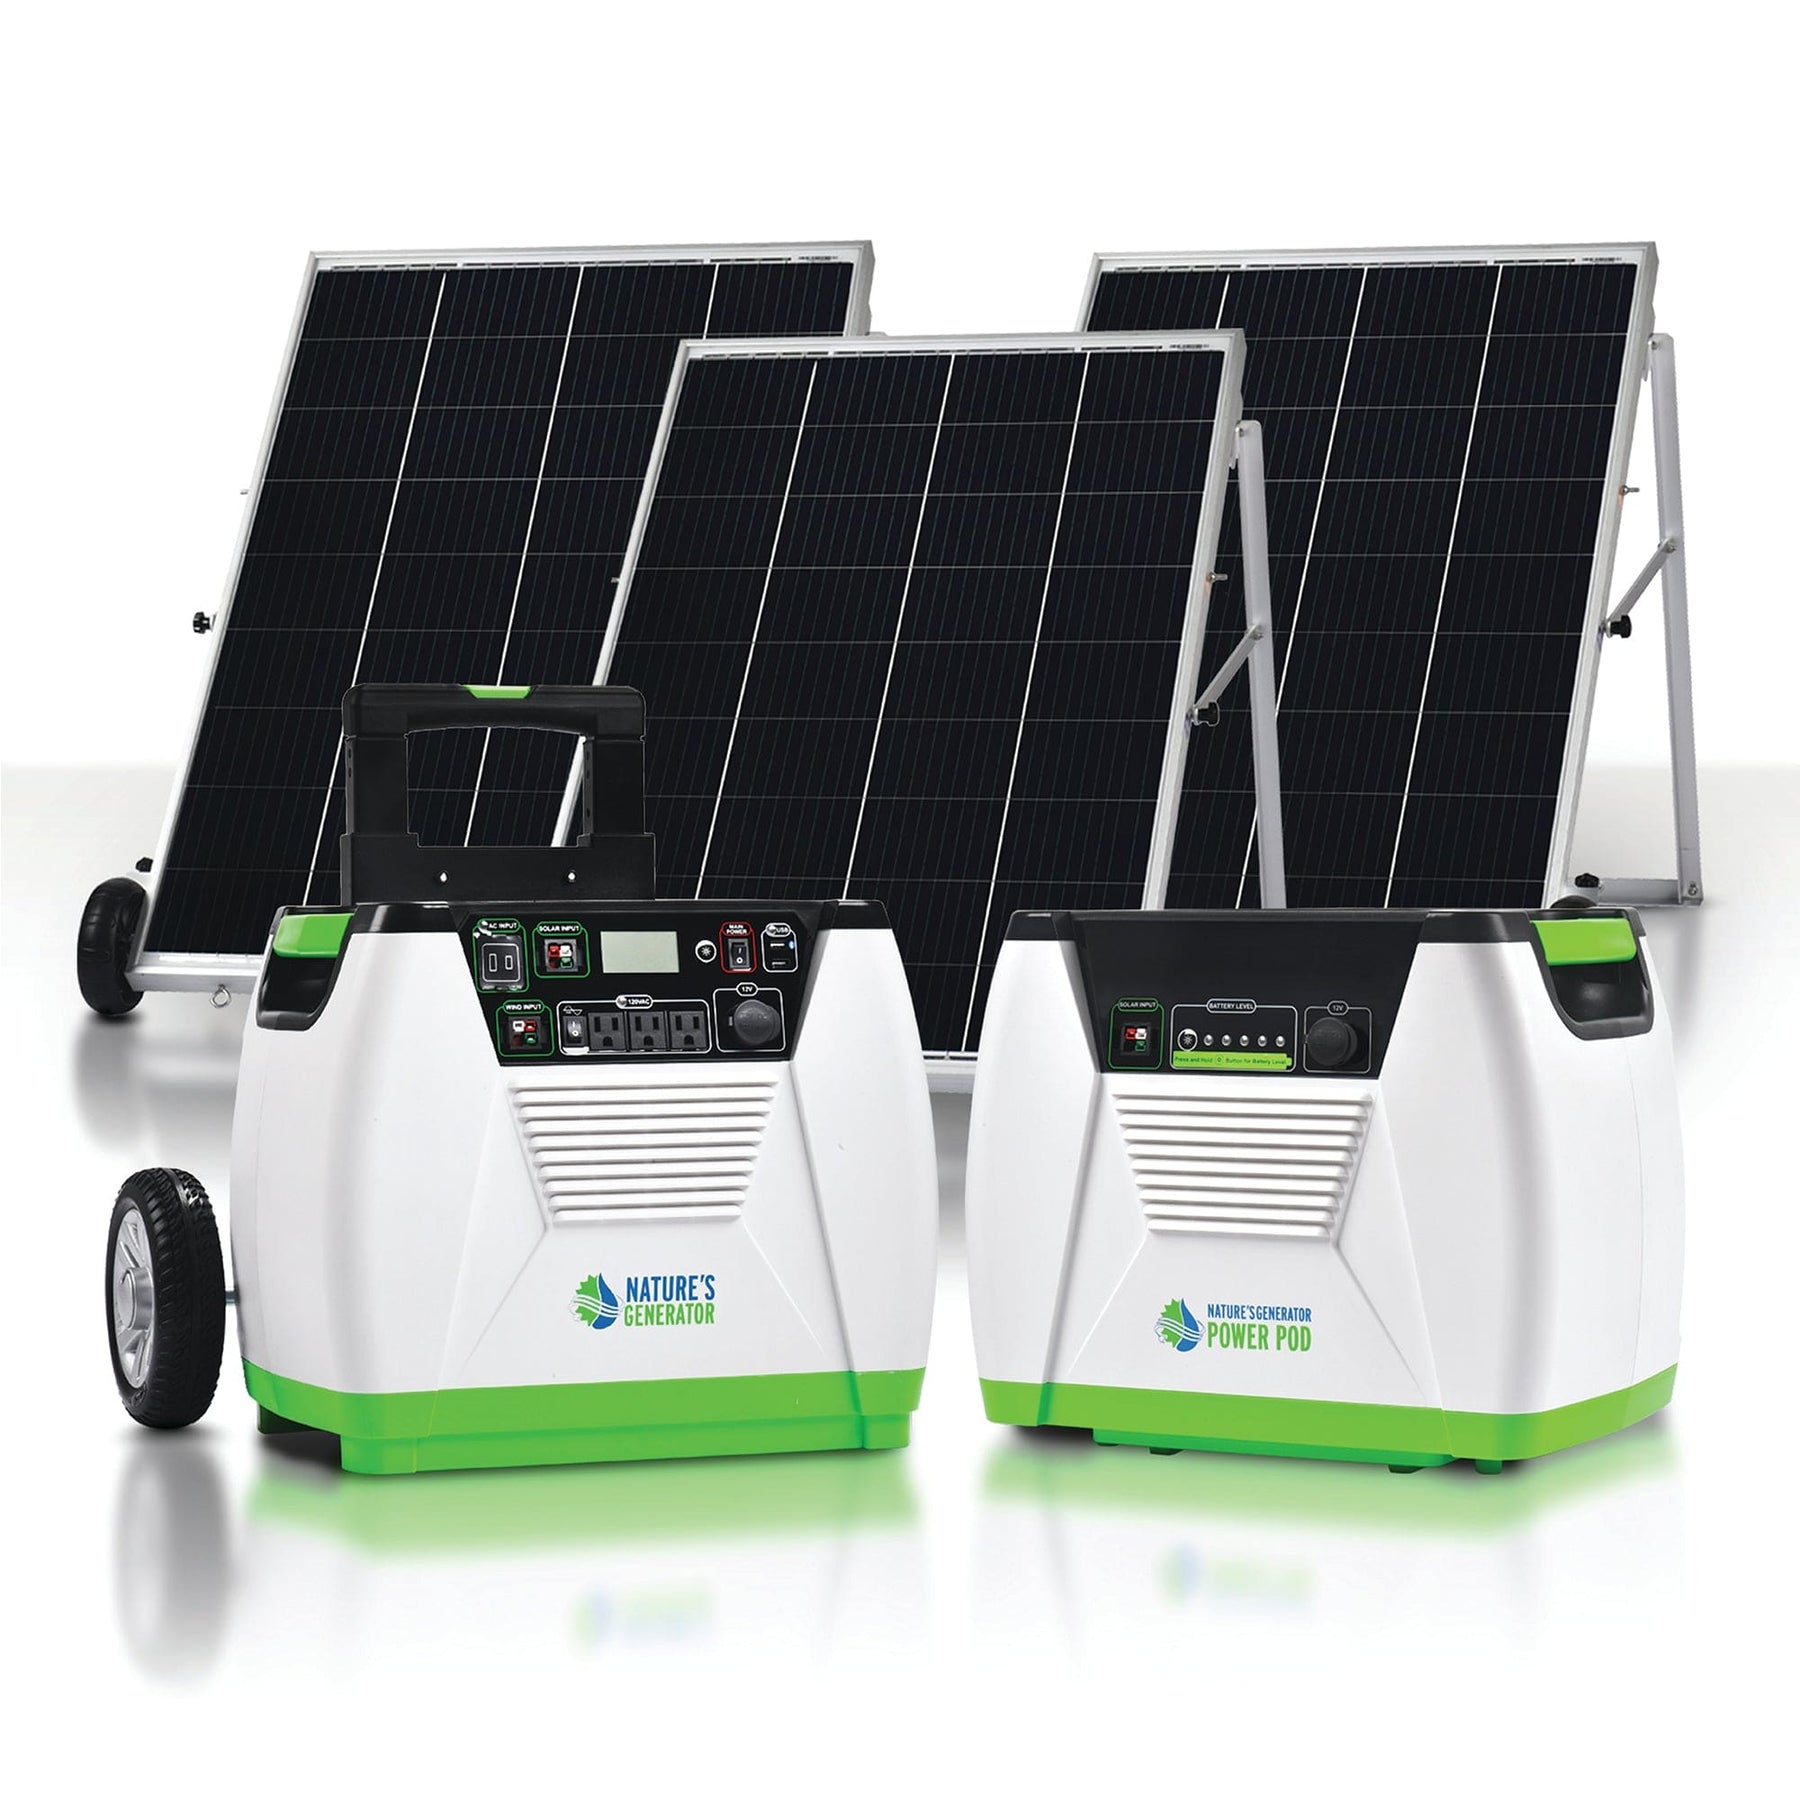 Nature's Generator Platinum Solar Generator System